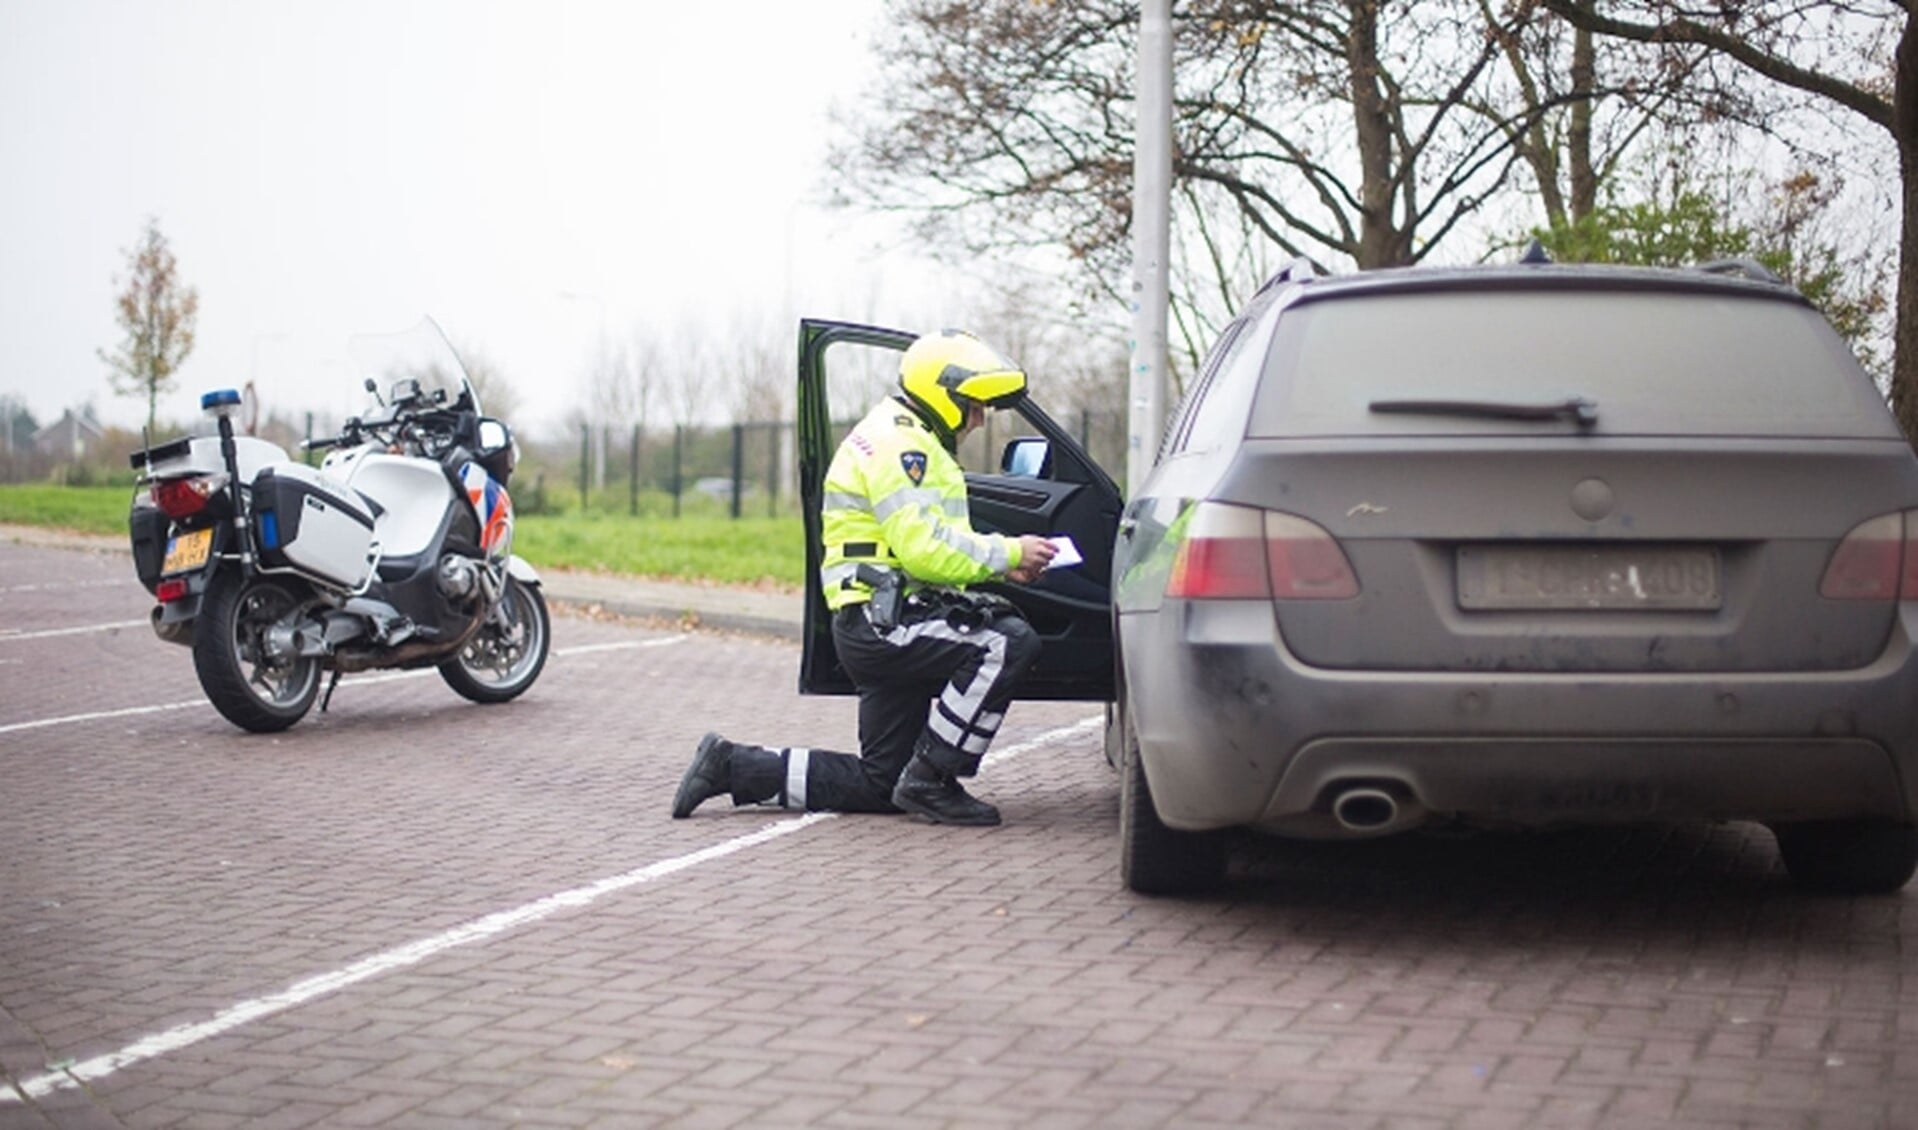 Foto: Politie Eenheid Den Haag